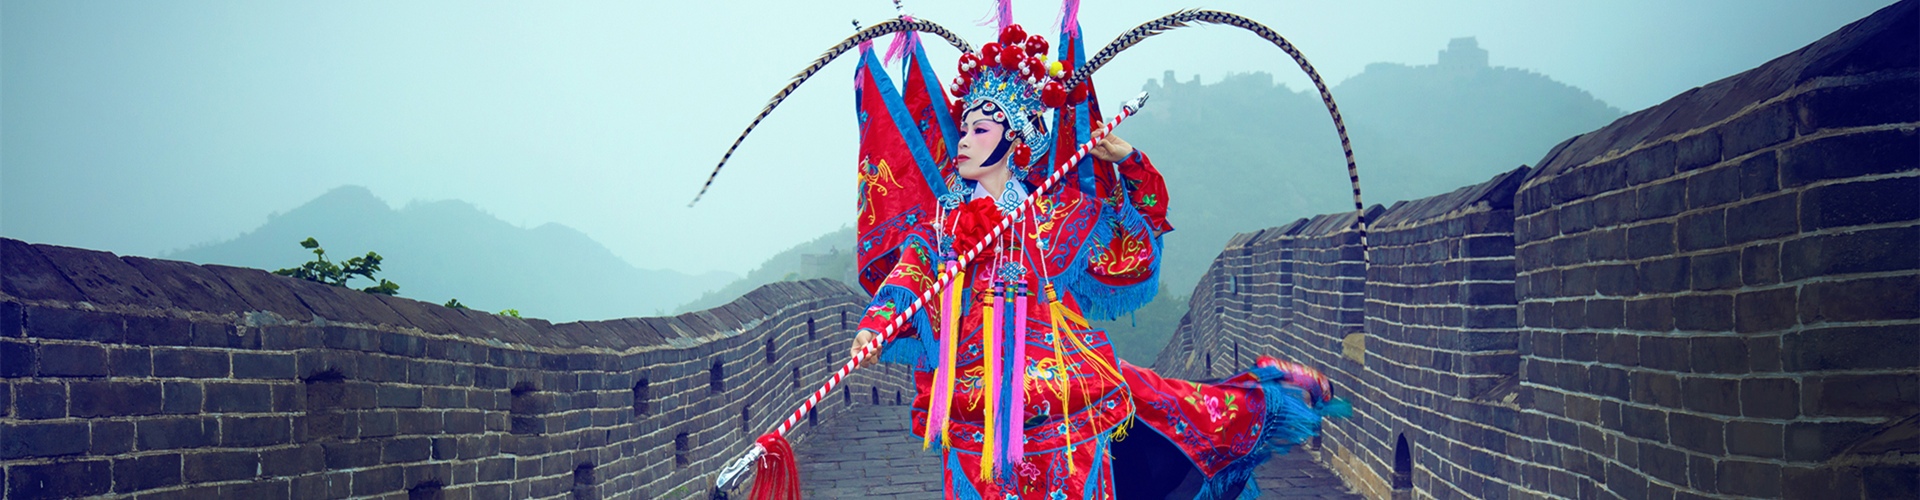 Beijing Entertainment: Beijing Fun Activities Guide